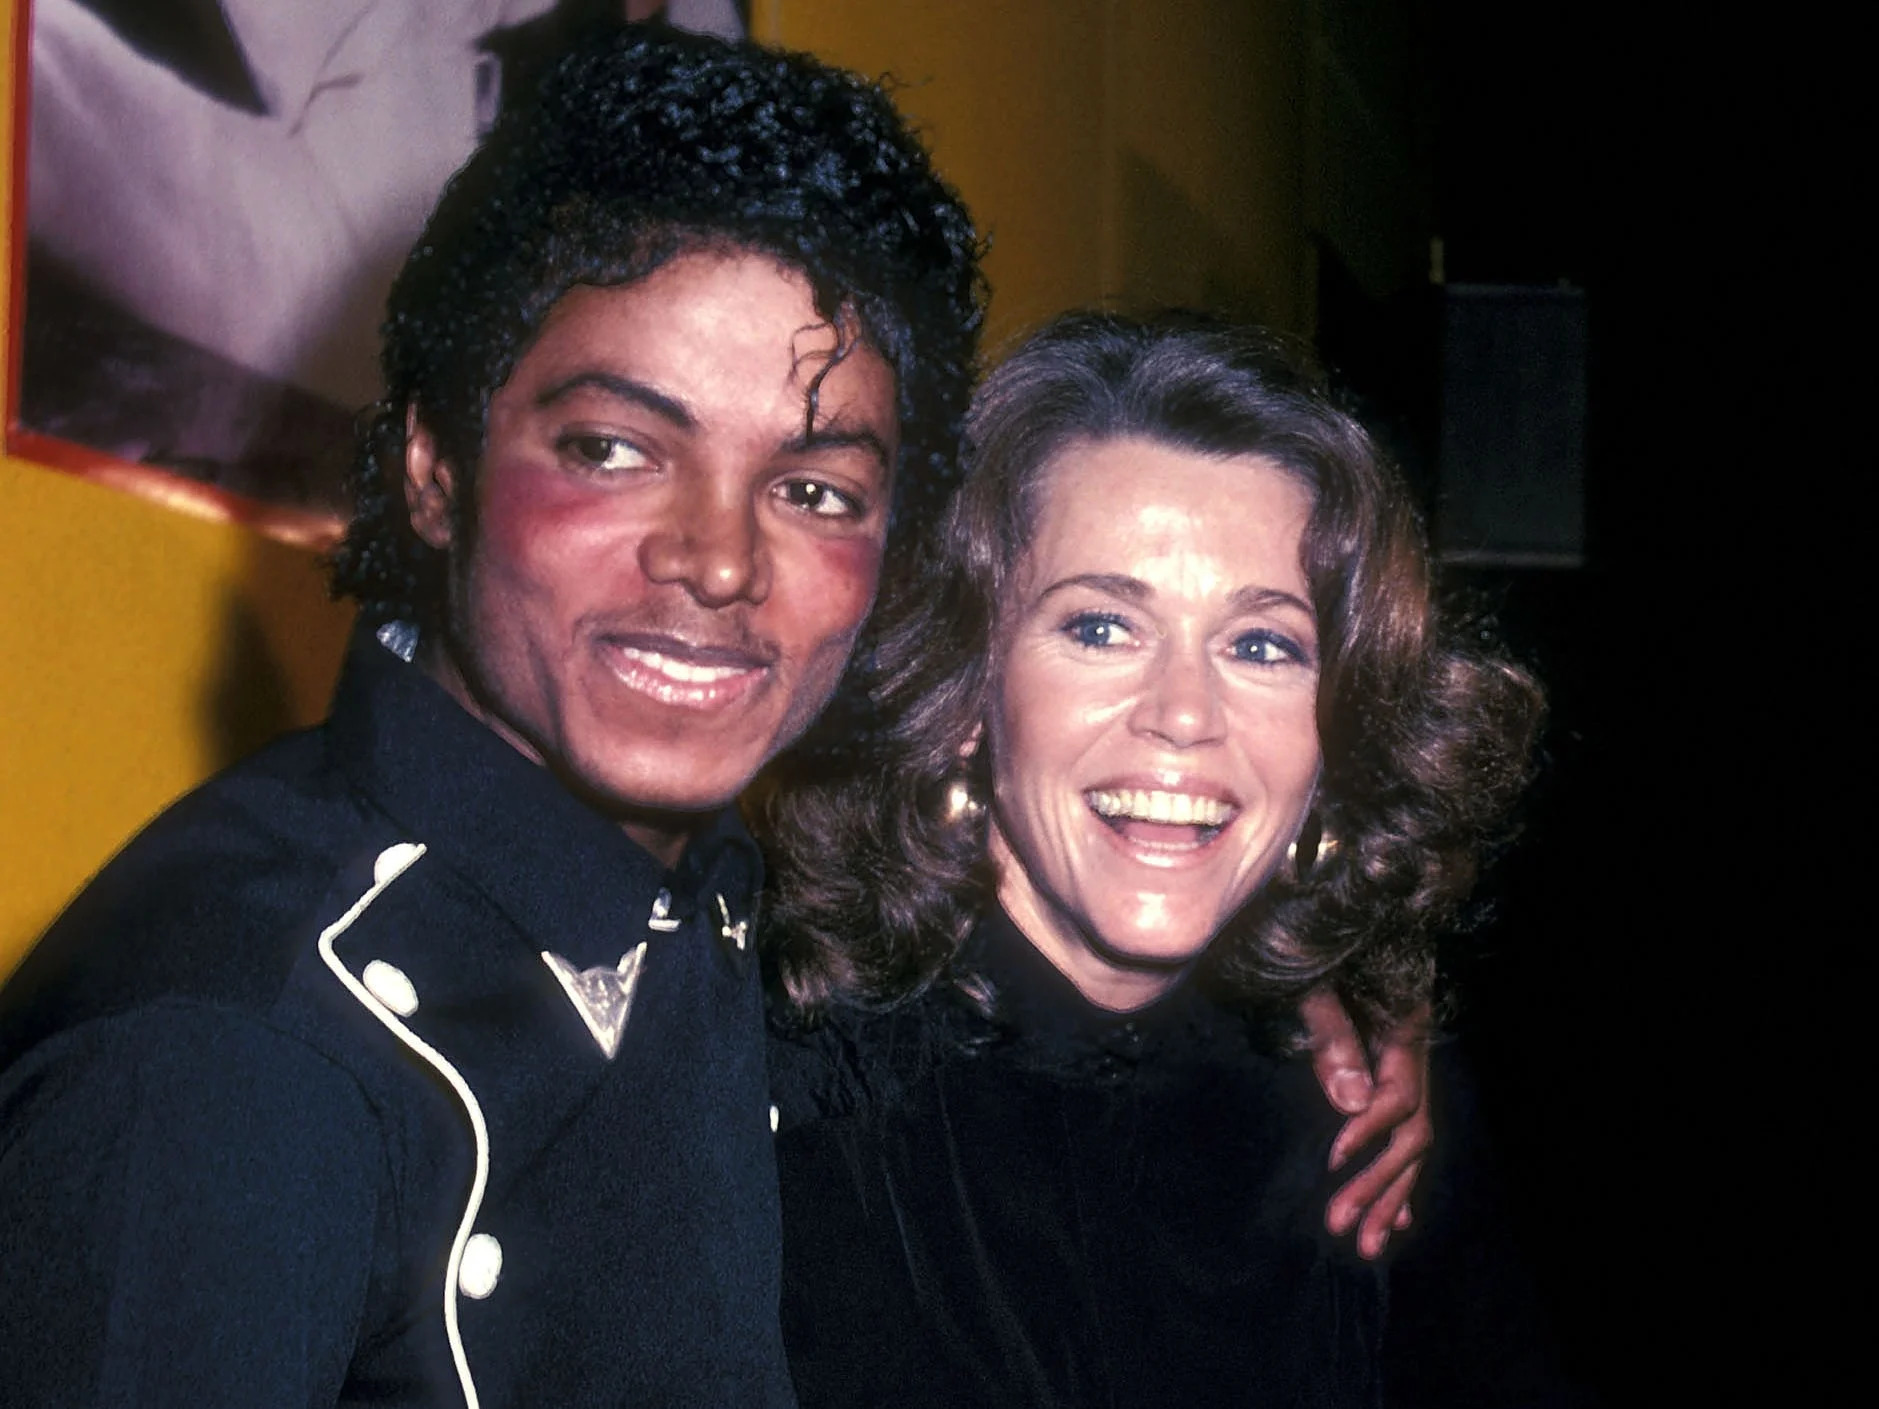 1983년 마이클 잭슨의 앨범 ‘스릴러’가 플래티넘 판매를 인증받았을 때 제인 폰다가 함께 축하하고 있다. AFP 자료사진